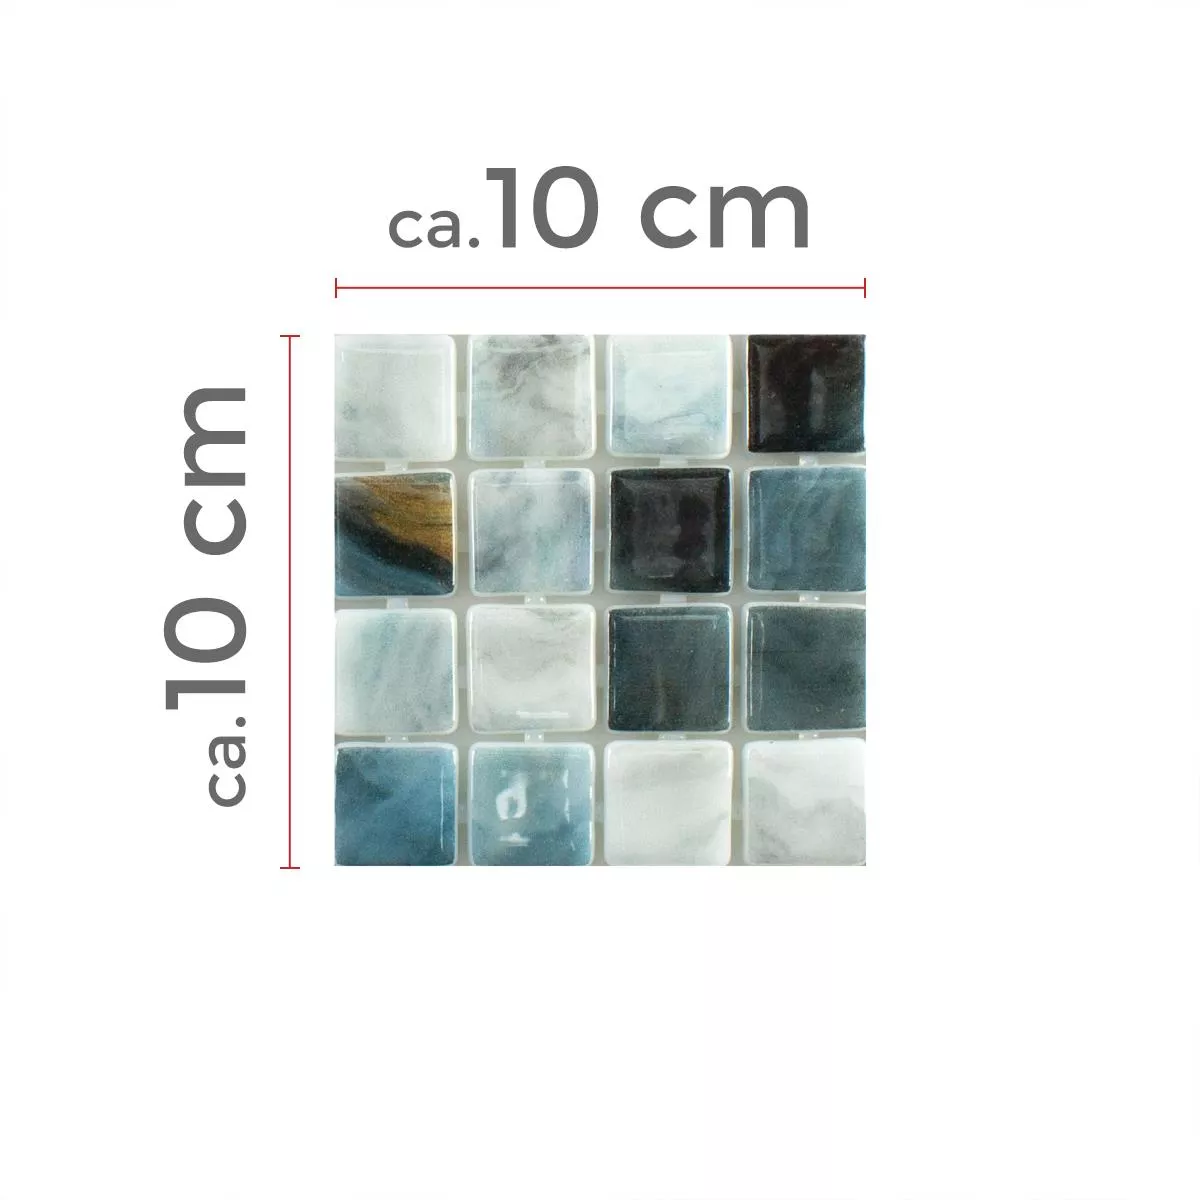 Muster von Glas Schwimmbad Mosaik Baltic Blau Grau 25x25mm